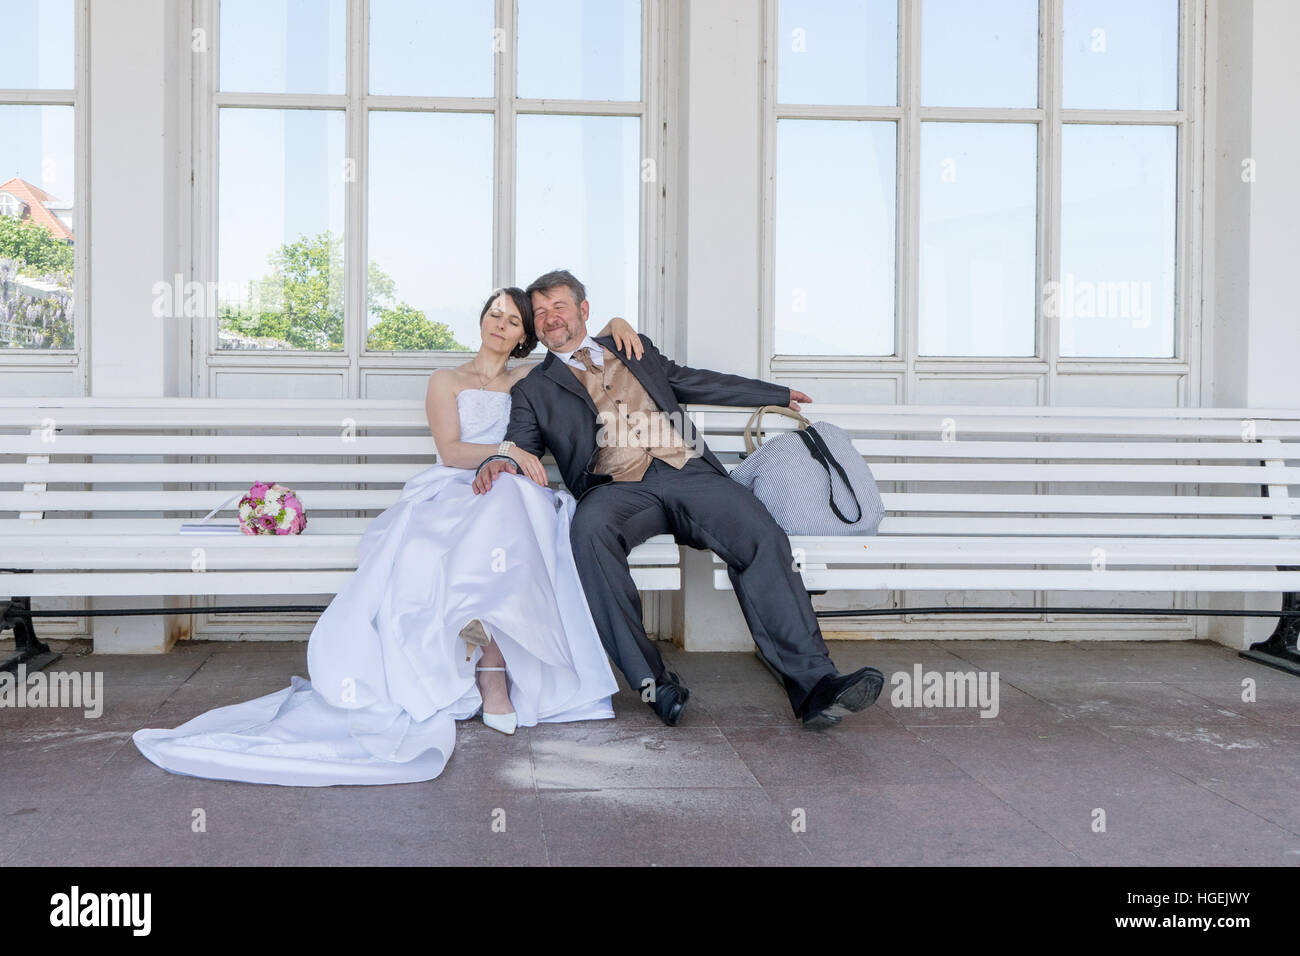 La novia y el novio descansa sobre un banco de trabajo Foto de stock